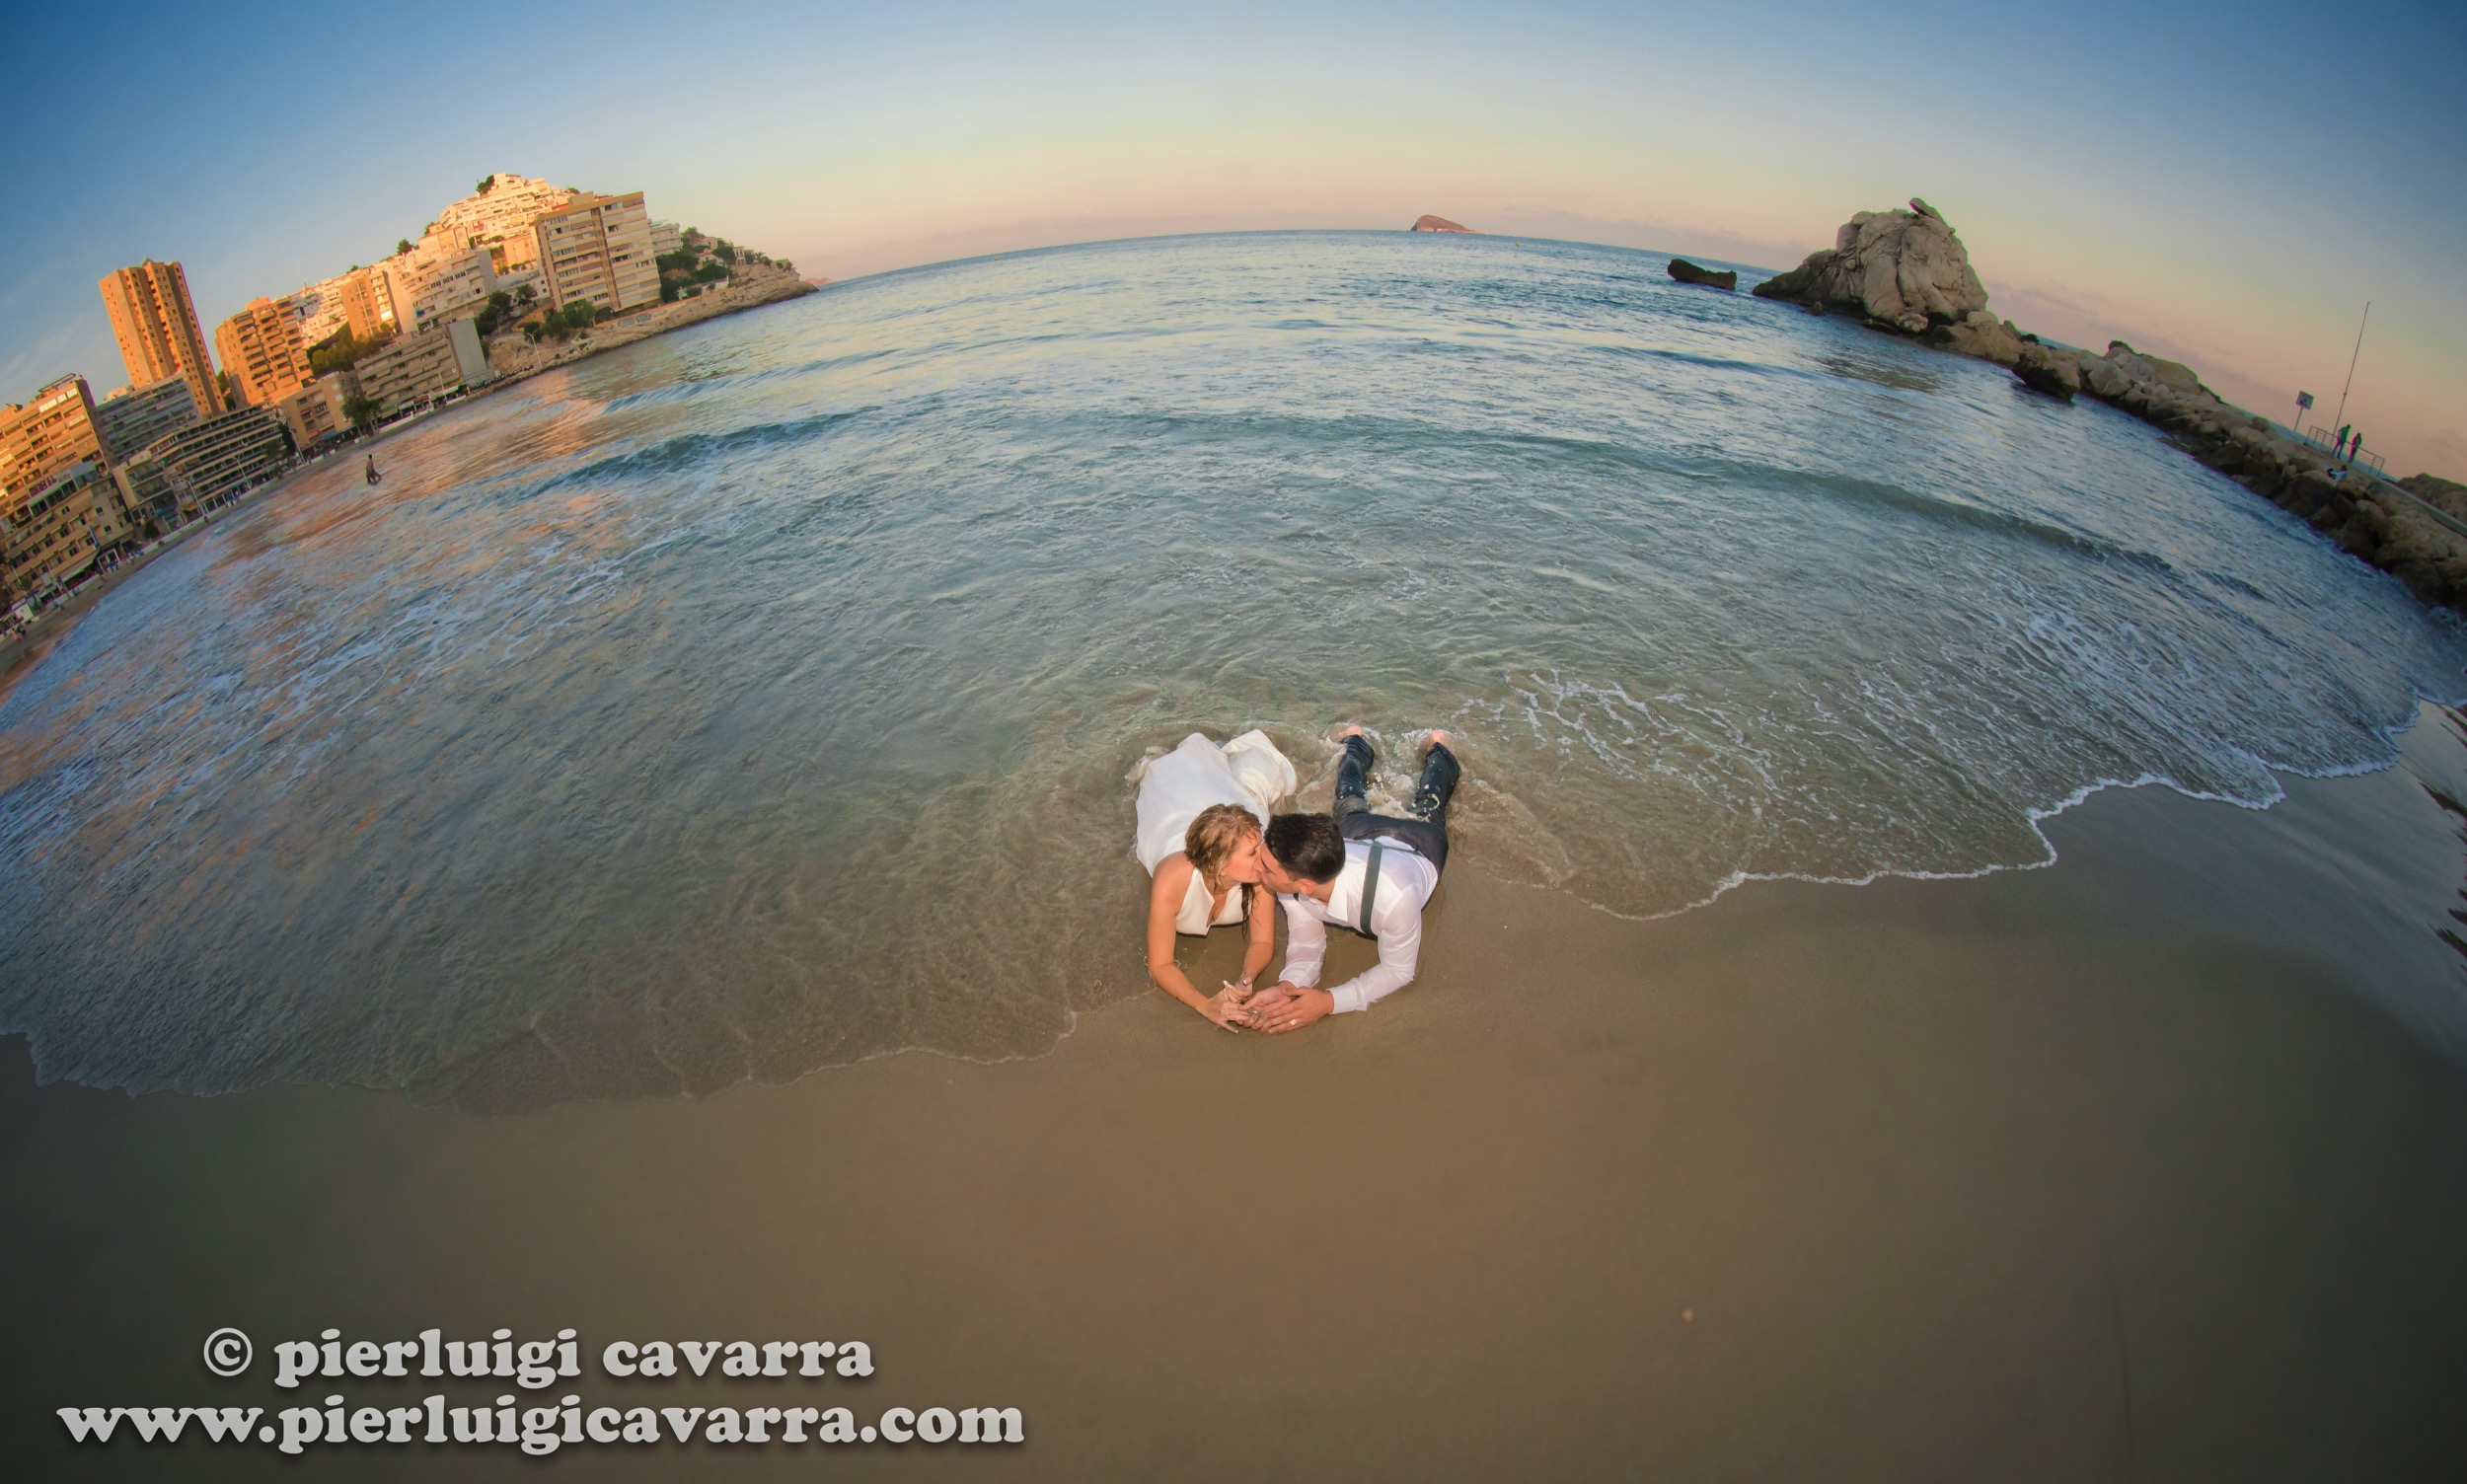 Pierluigi Cavarra - fotografo de bodas y eventos - wedding photographer costa blanca - ejemplo -30